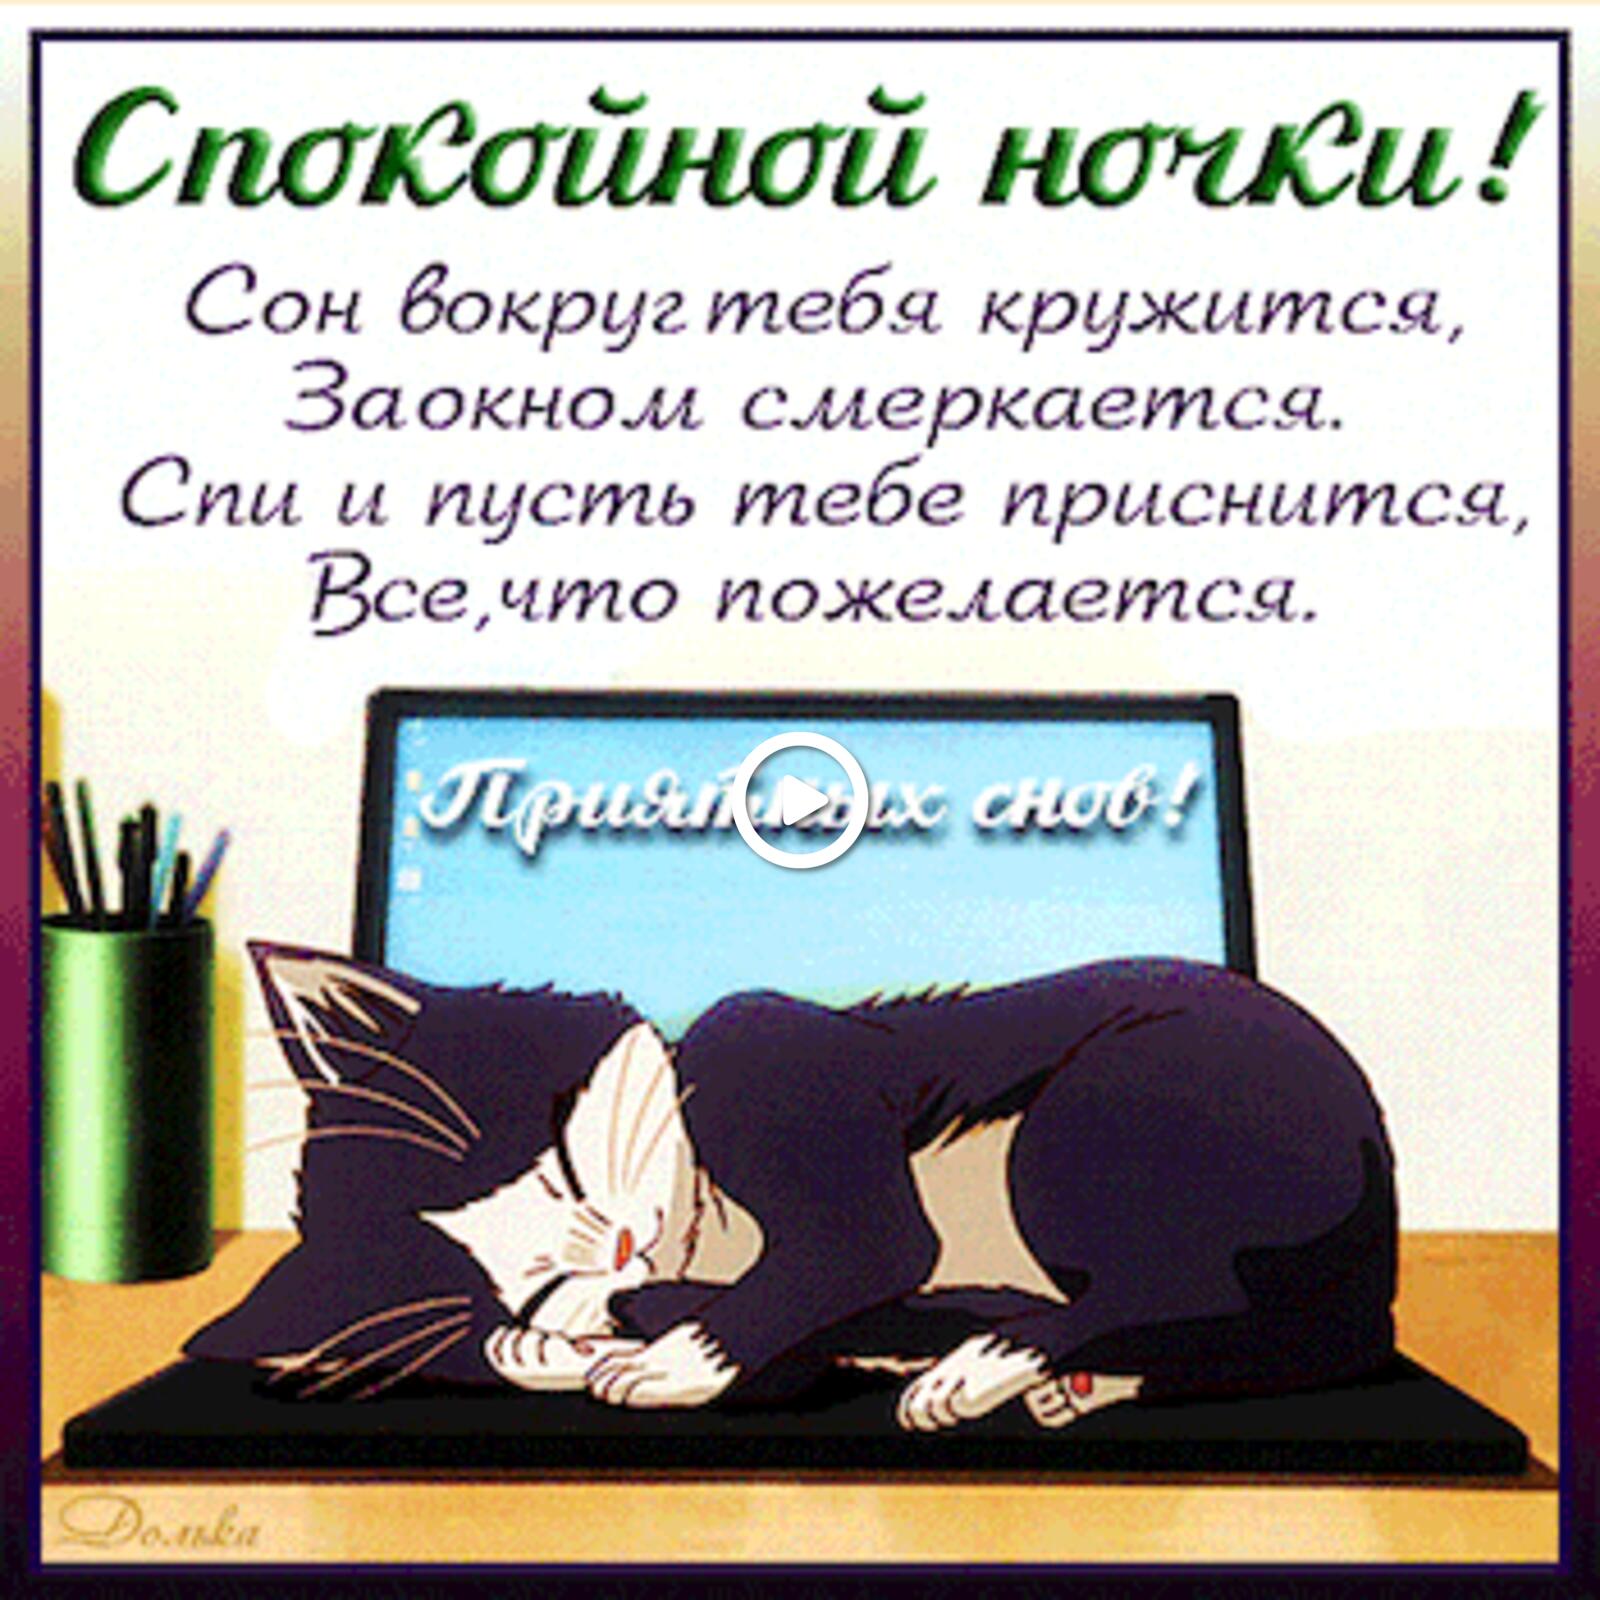 一张以晚安 晚安卡 小猫为主题的明信片